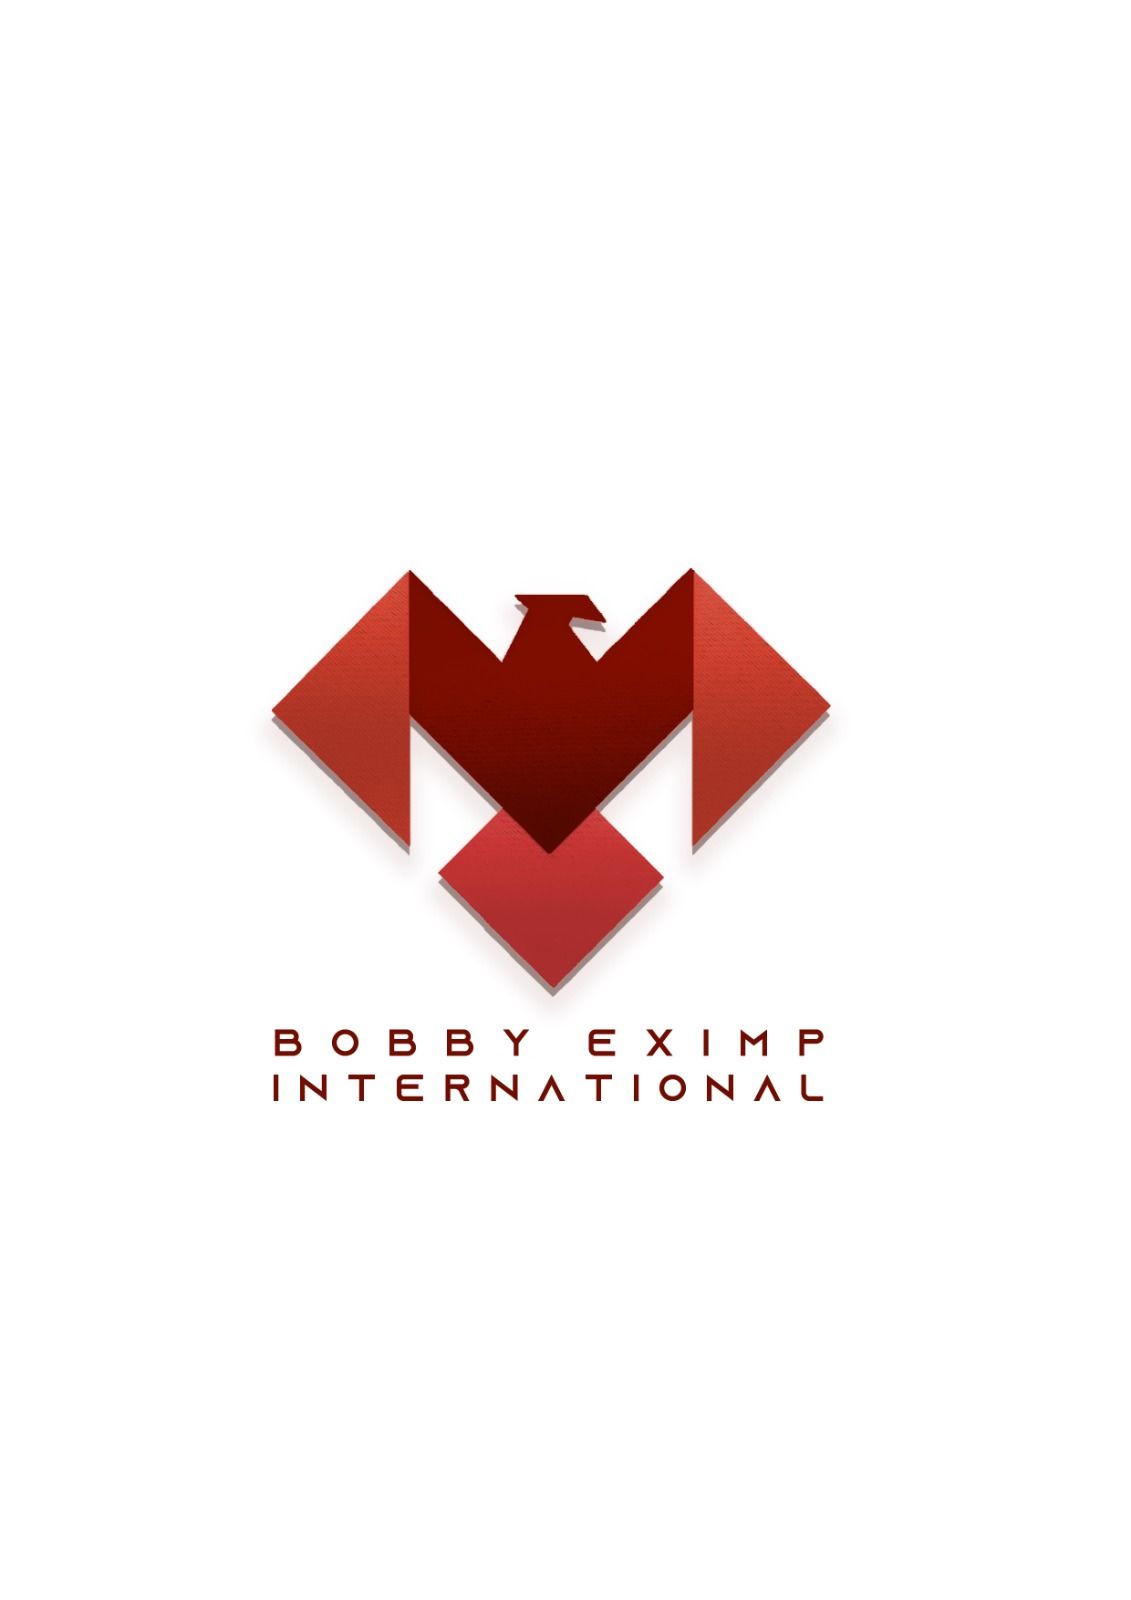 Bobby Eximp International logo